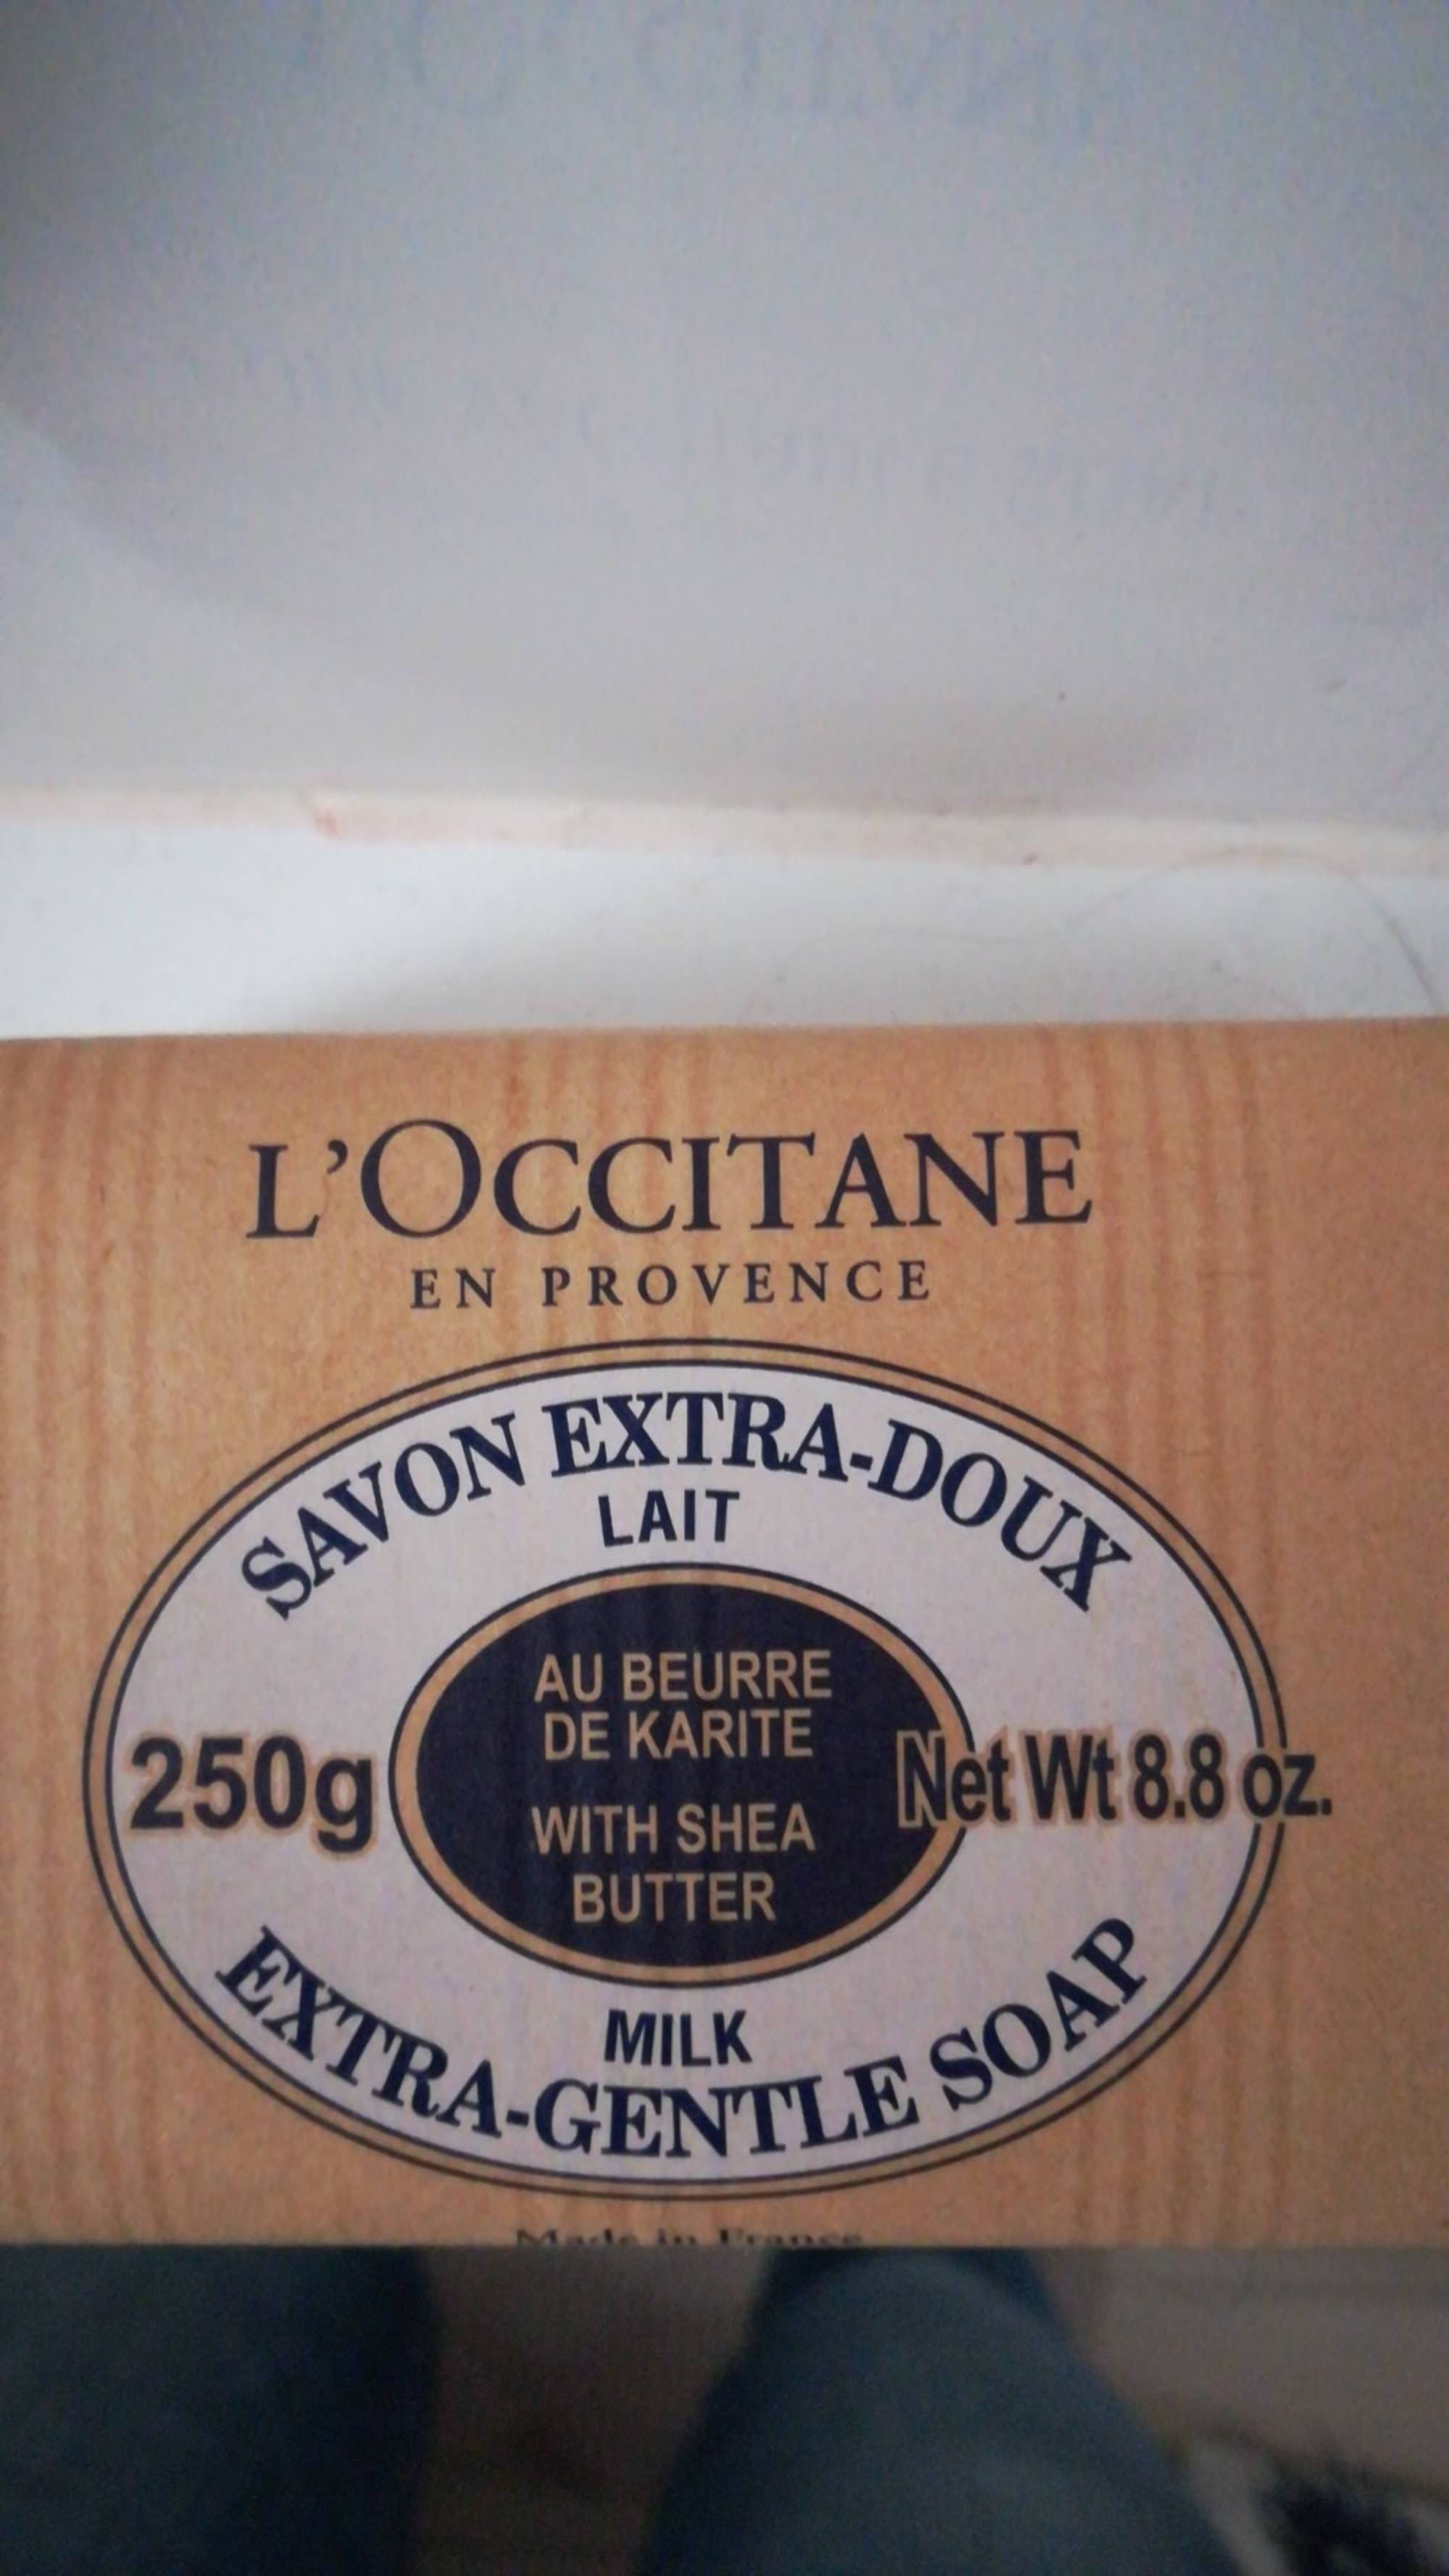 L'OCCITANE - Savon extra-doux lait au beurre de karité